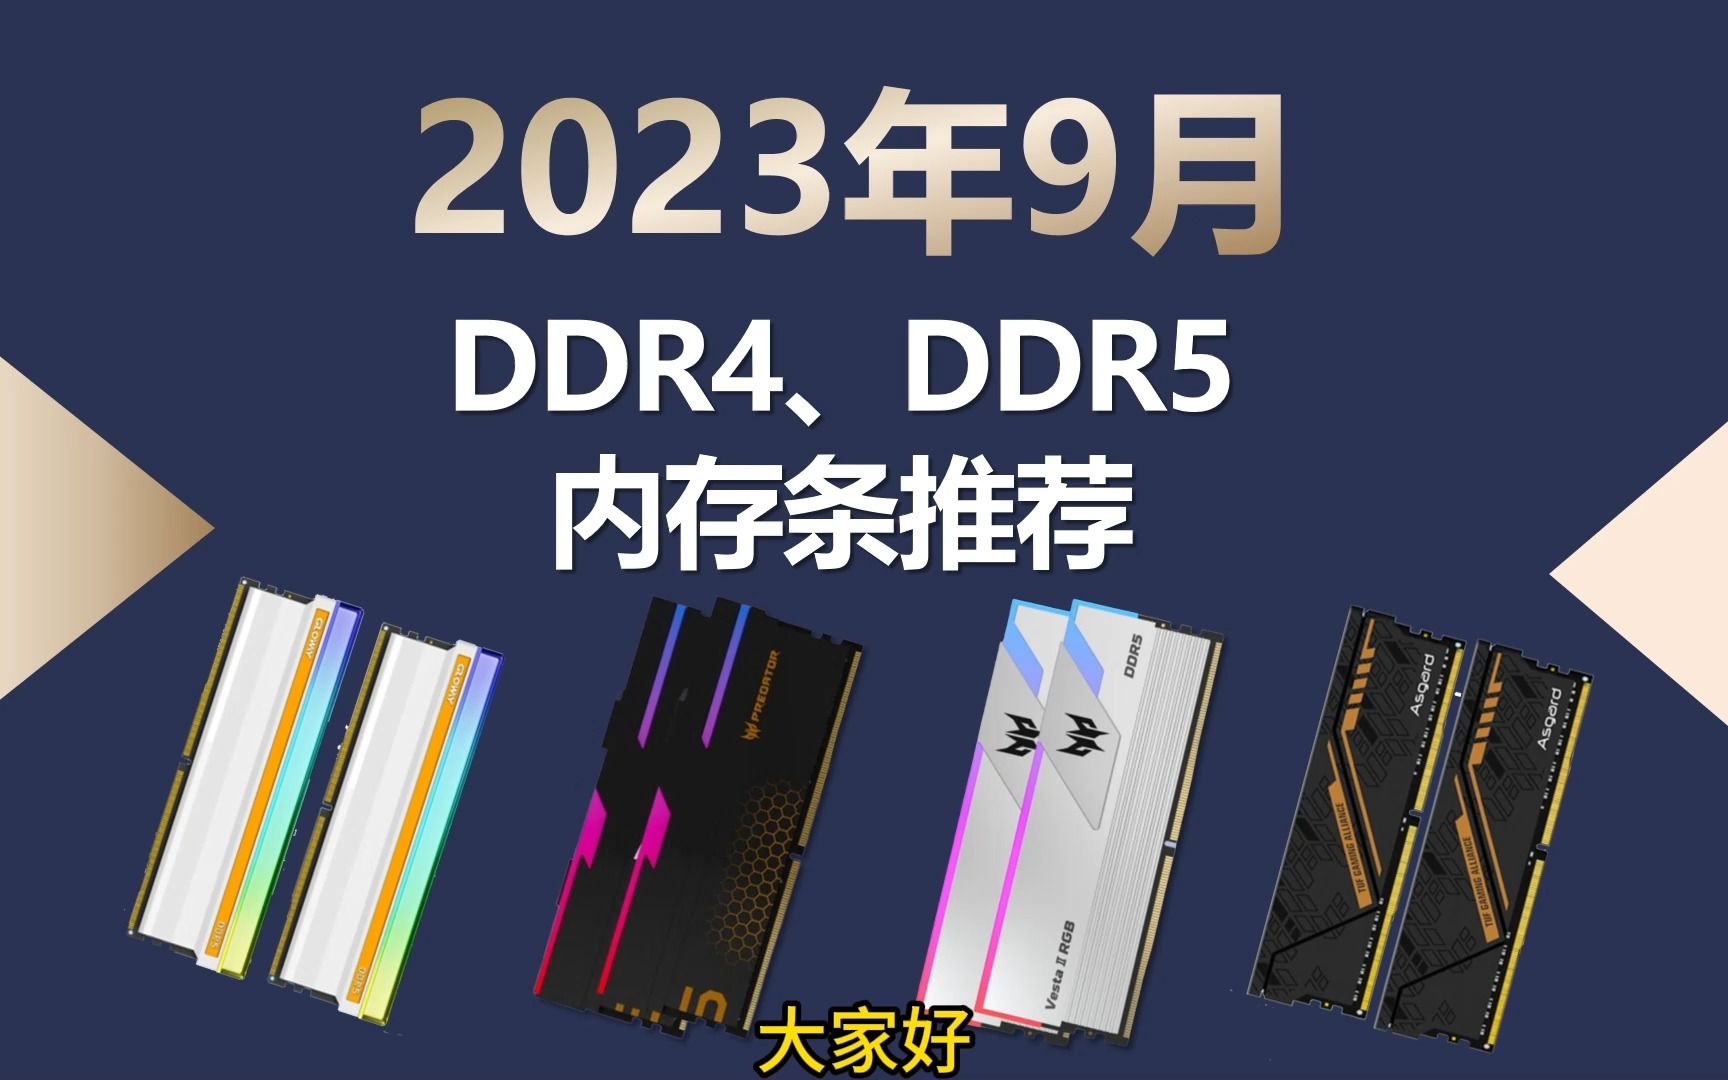 三星与 ASUS 联合推出 DDR5 内存条，开启内存技术新时代  第3张